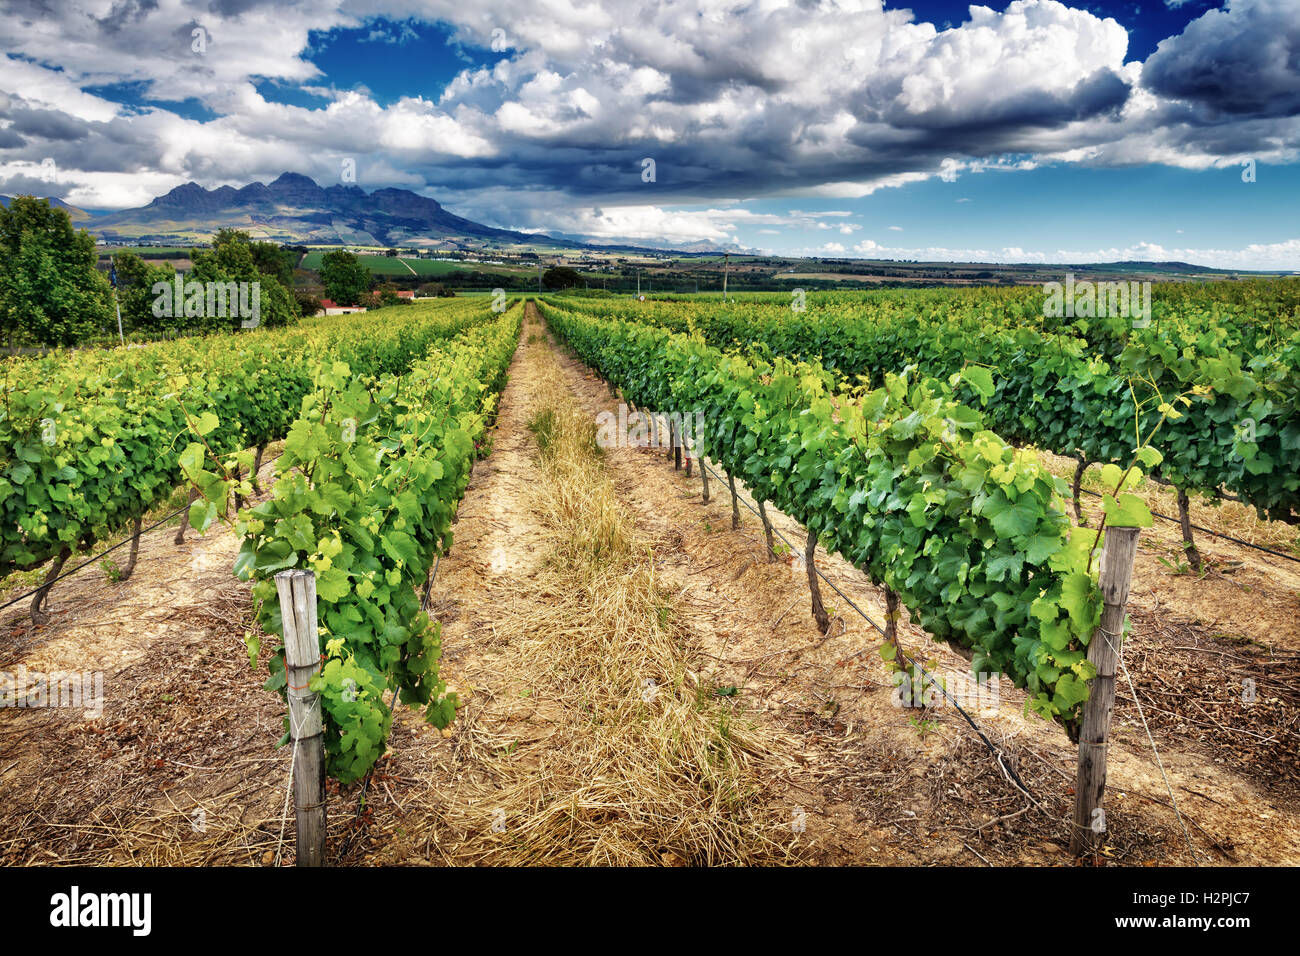 Hermoso paisaje de viñedos, con una gran vista panorámica del valle de la vid, la temporada de otoño, industria del vino en Sudáfrica Foto de stock